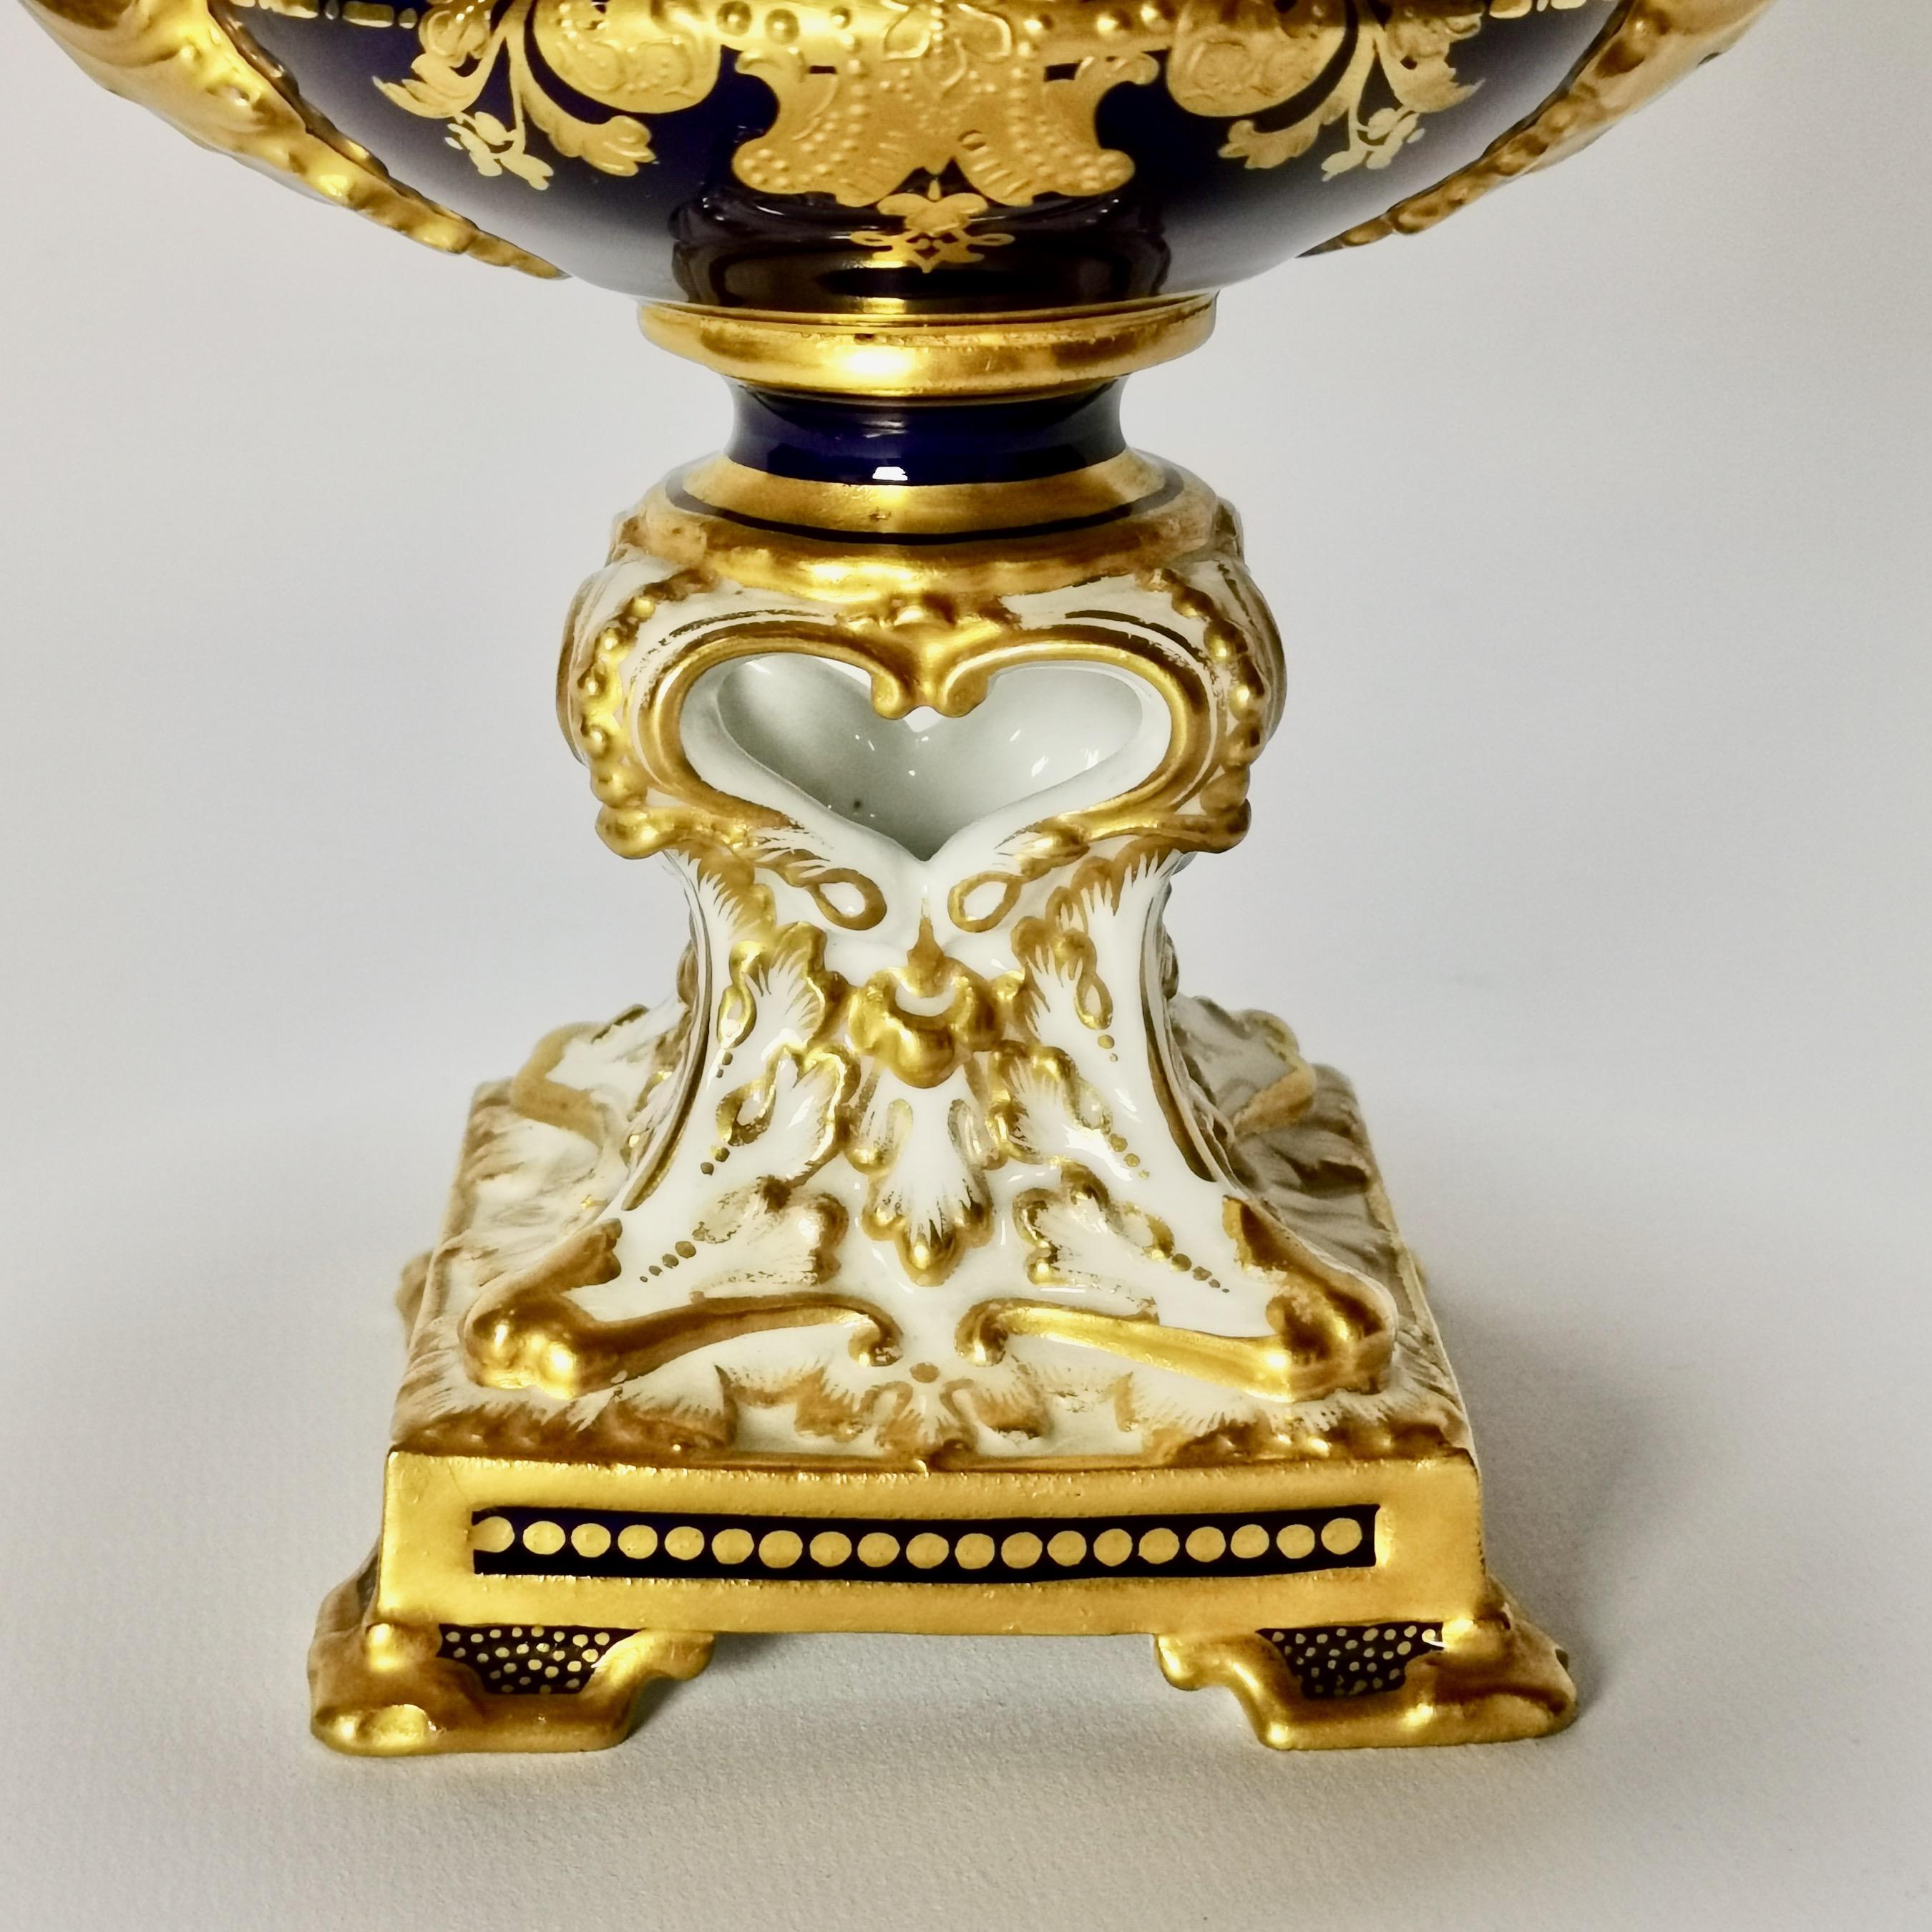 Royal Crown Derby Porcelain Campana Vase, Cobalt Blue, Flowers by C Gresley 1916 For Sale 4